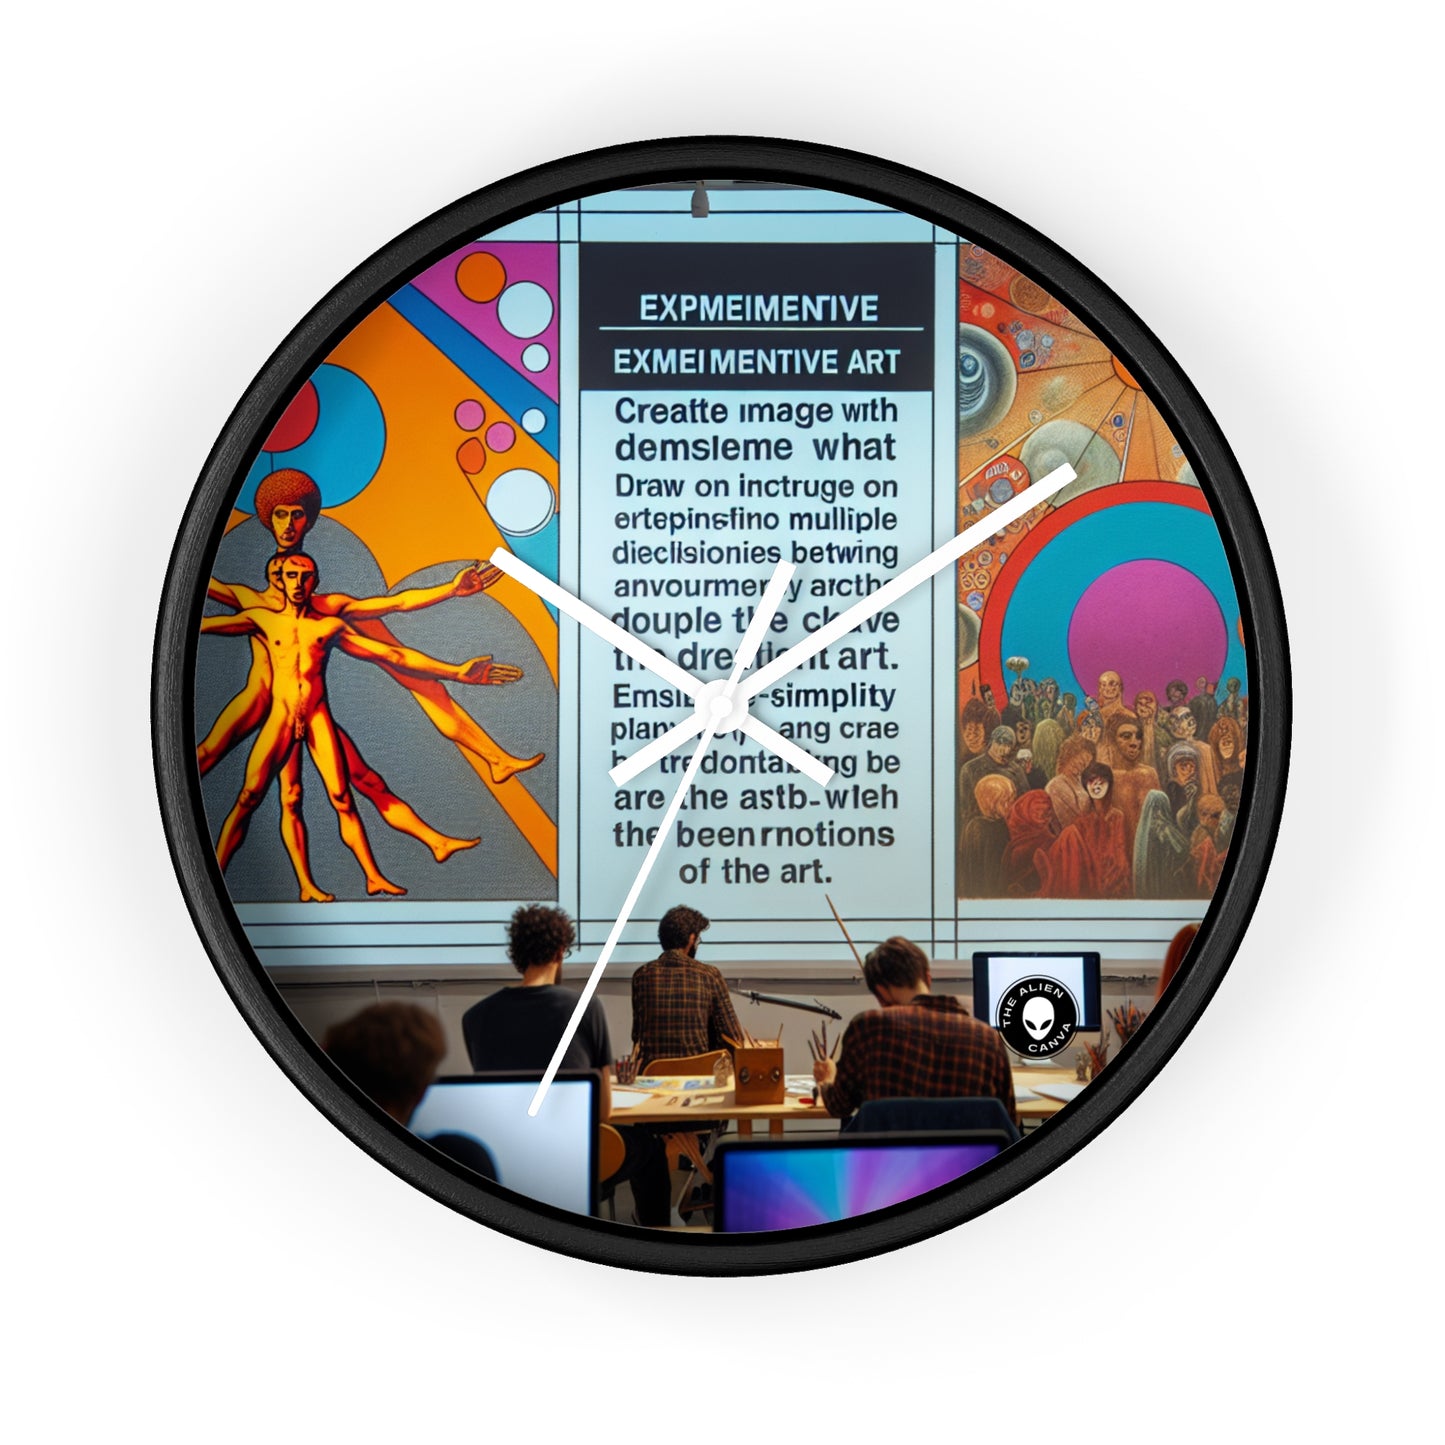 "Objetos encontrados en movimiento: un experimento Fluxus" - El reloj de pared alienígena Fluxus